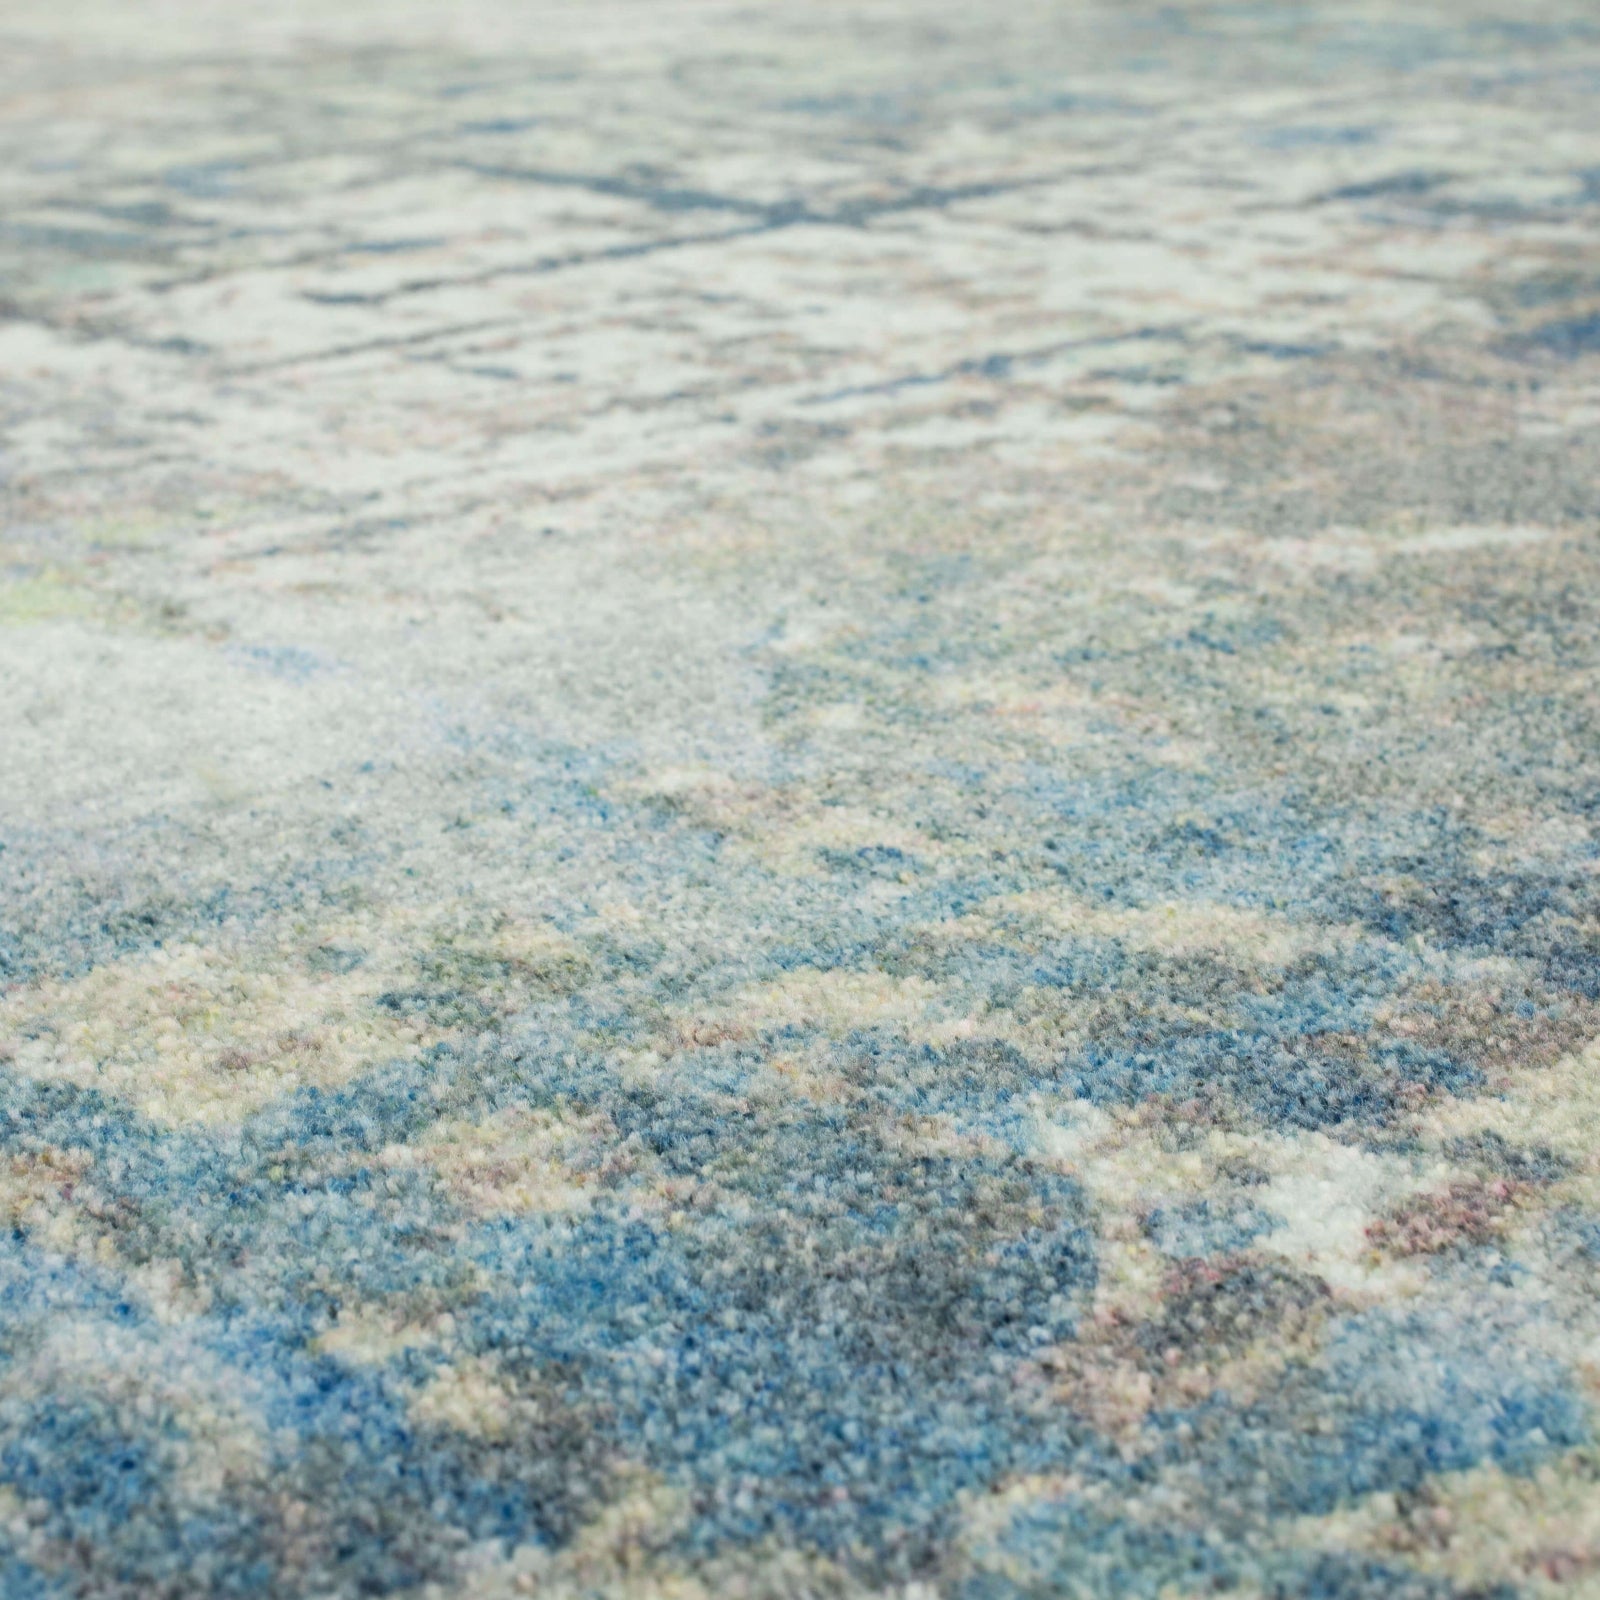 Karastan Kaleidoscope Cymbeline Blue Area Rug – Incredible Rugs